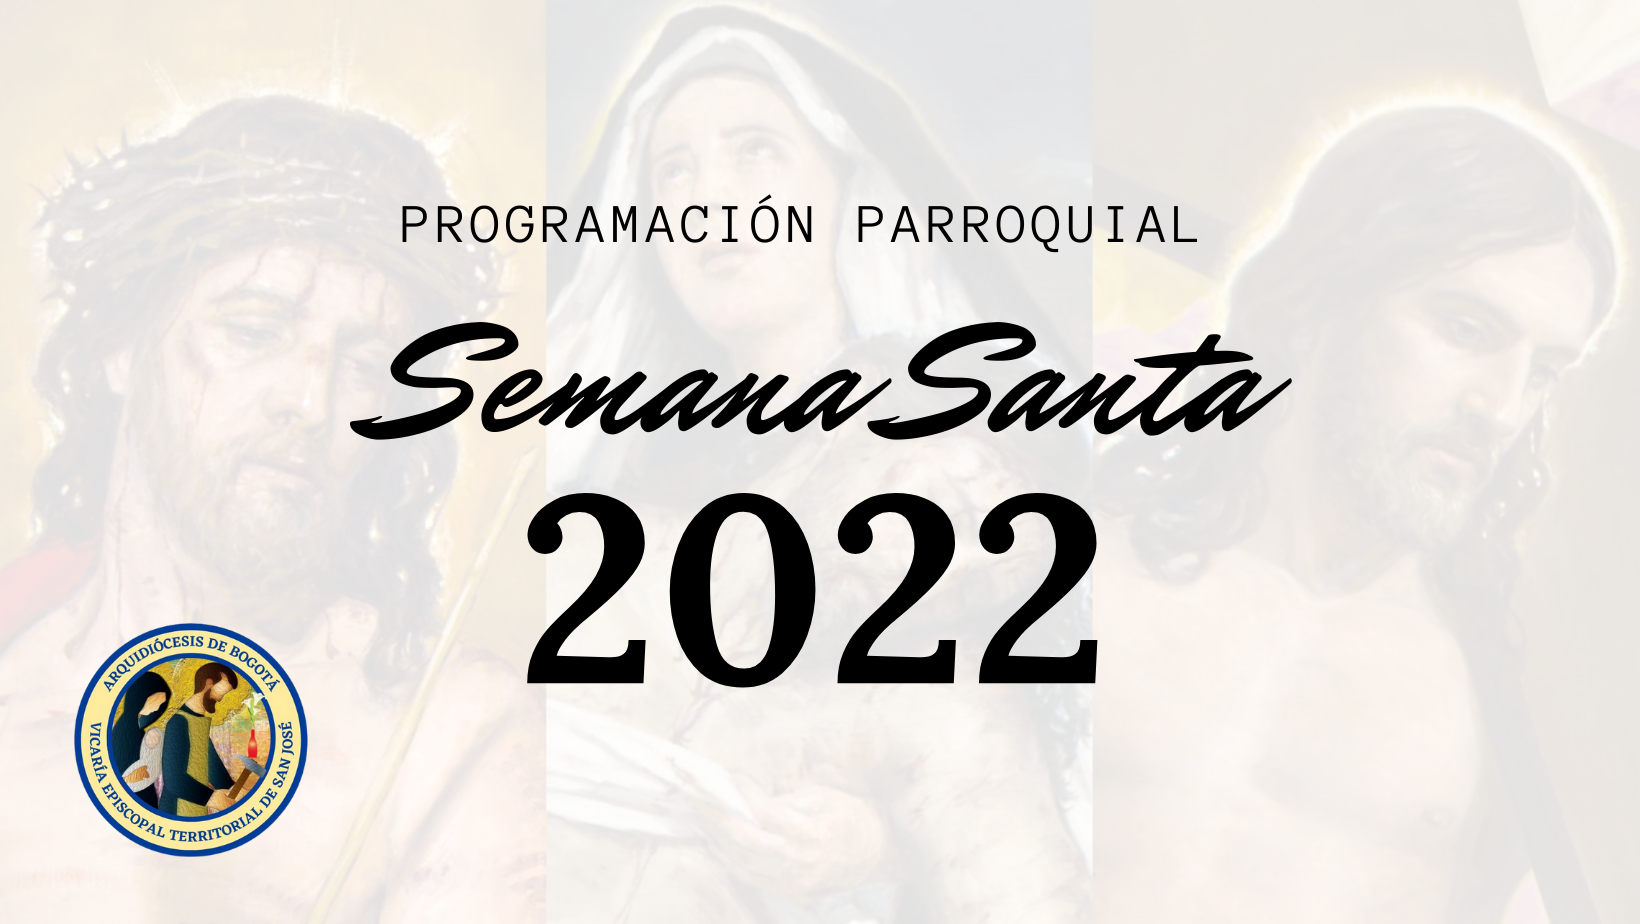 PROGRAMACIÓN SEMANA SANTA 2022 | La Virgen de la Medalla Milagrosa